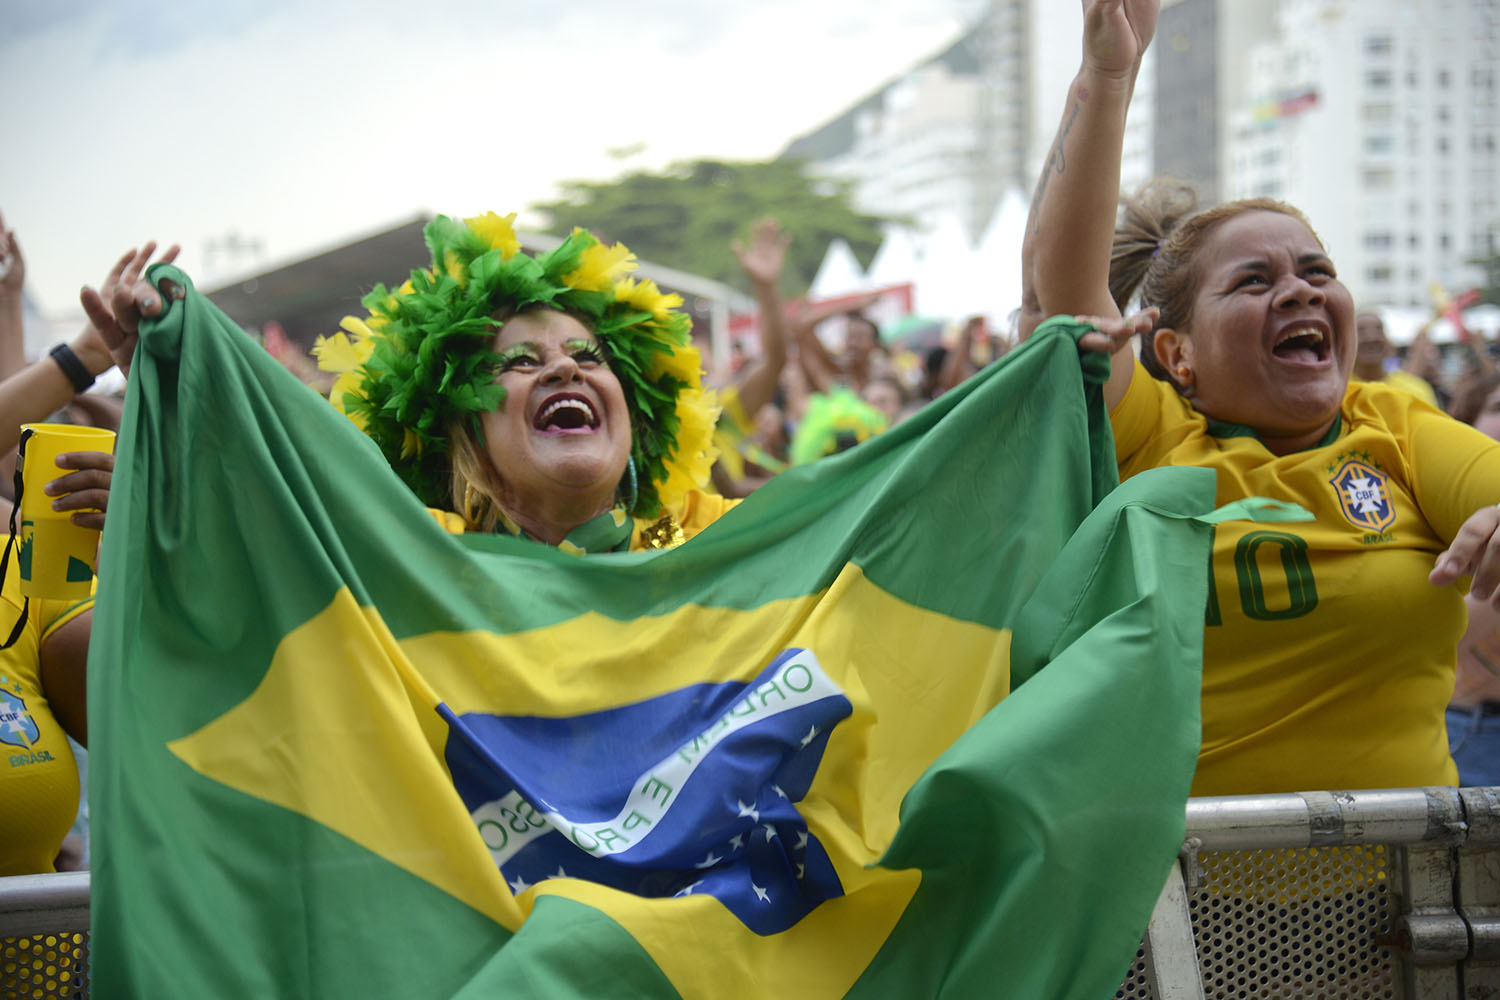 #PraCegoVer: Torcedores comemoram gols do Brasil contra a Coreia do Sul pela Copa do Mundo 2022, no Fifa Fan Festival, em Copacabana, no Rio de Janeiro